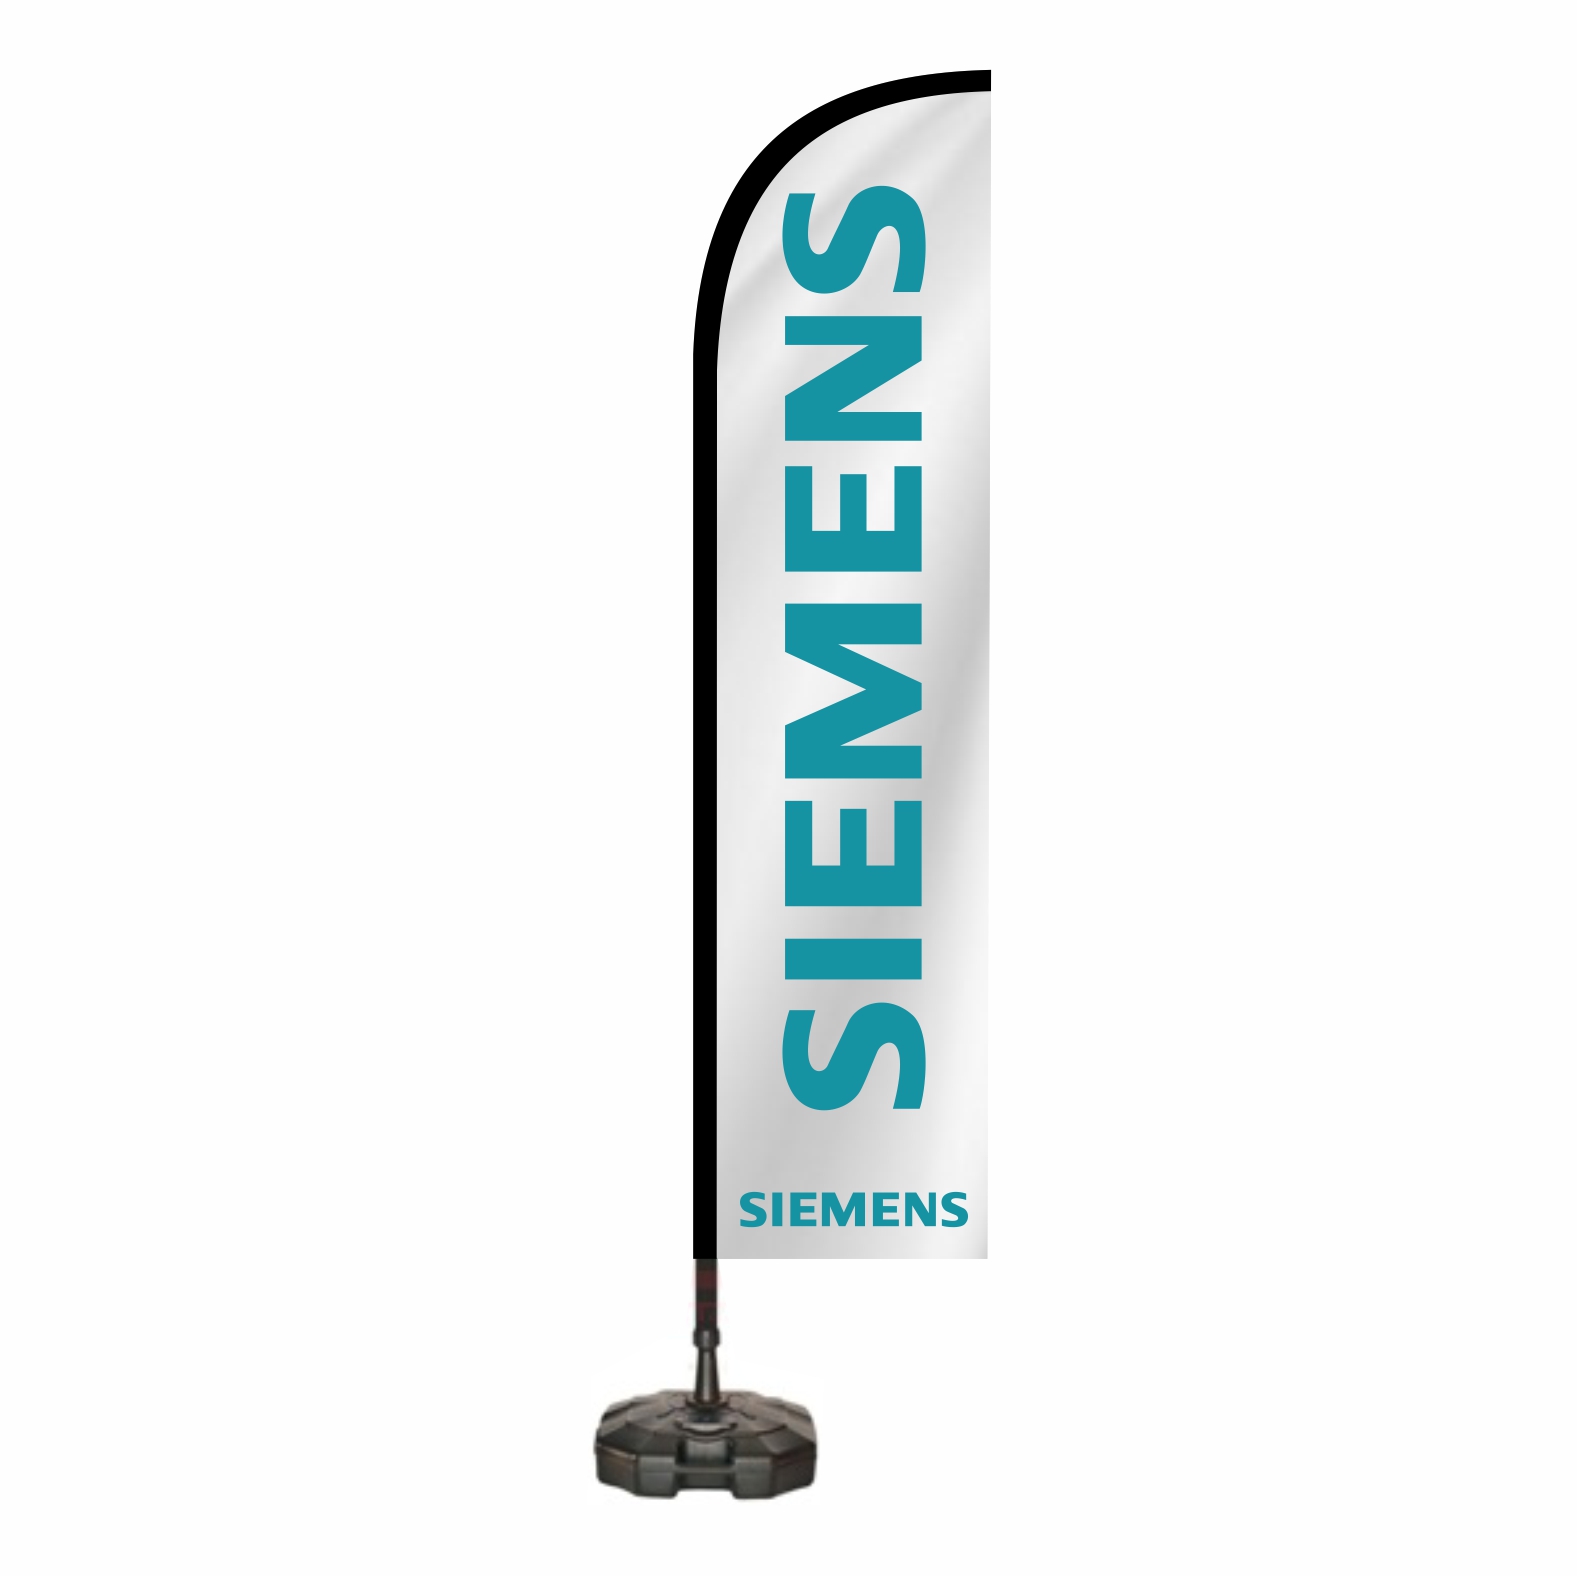 Siemens Oltal Bayra Sat Yeri